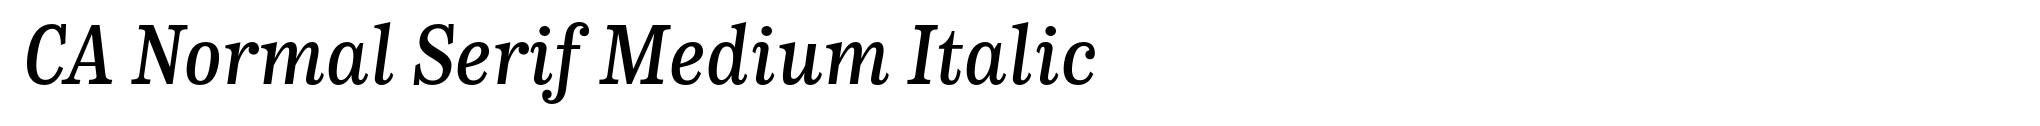 CA Normal Serif Medium Italic image